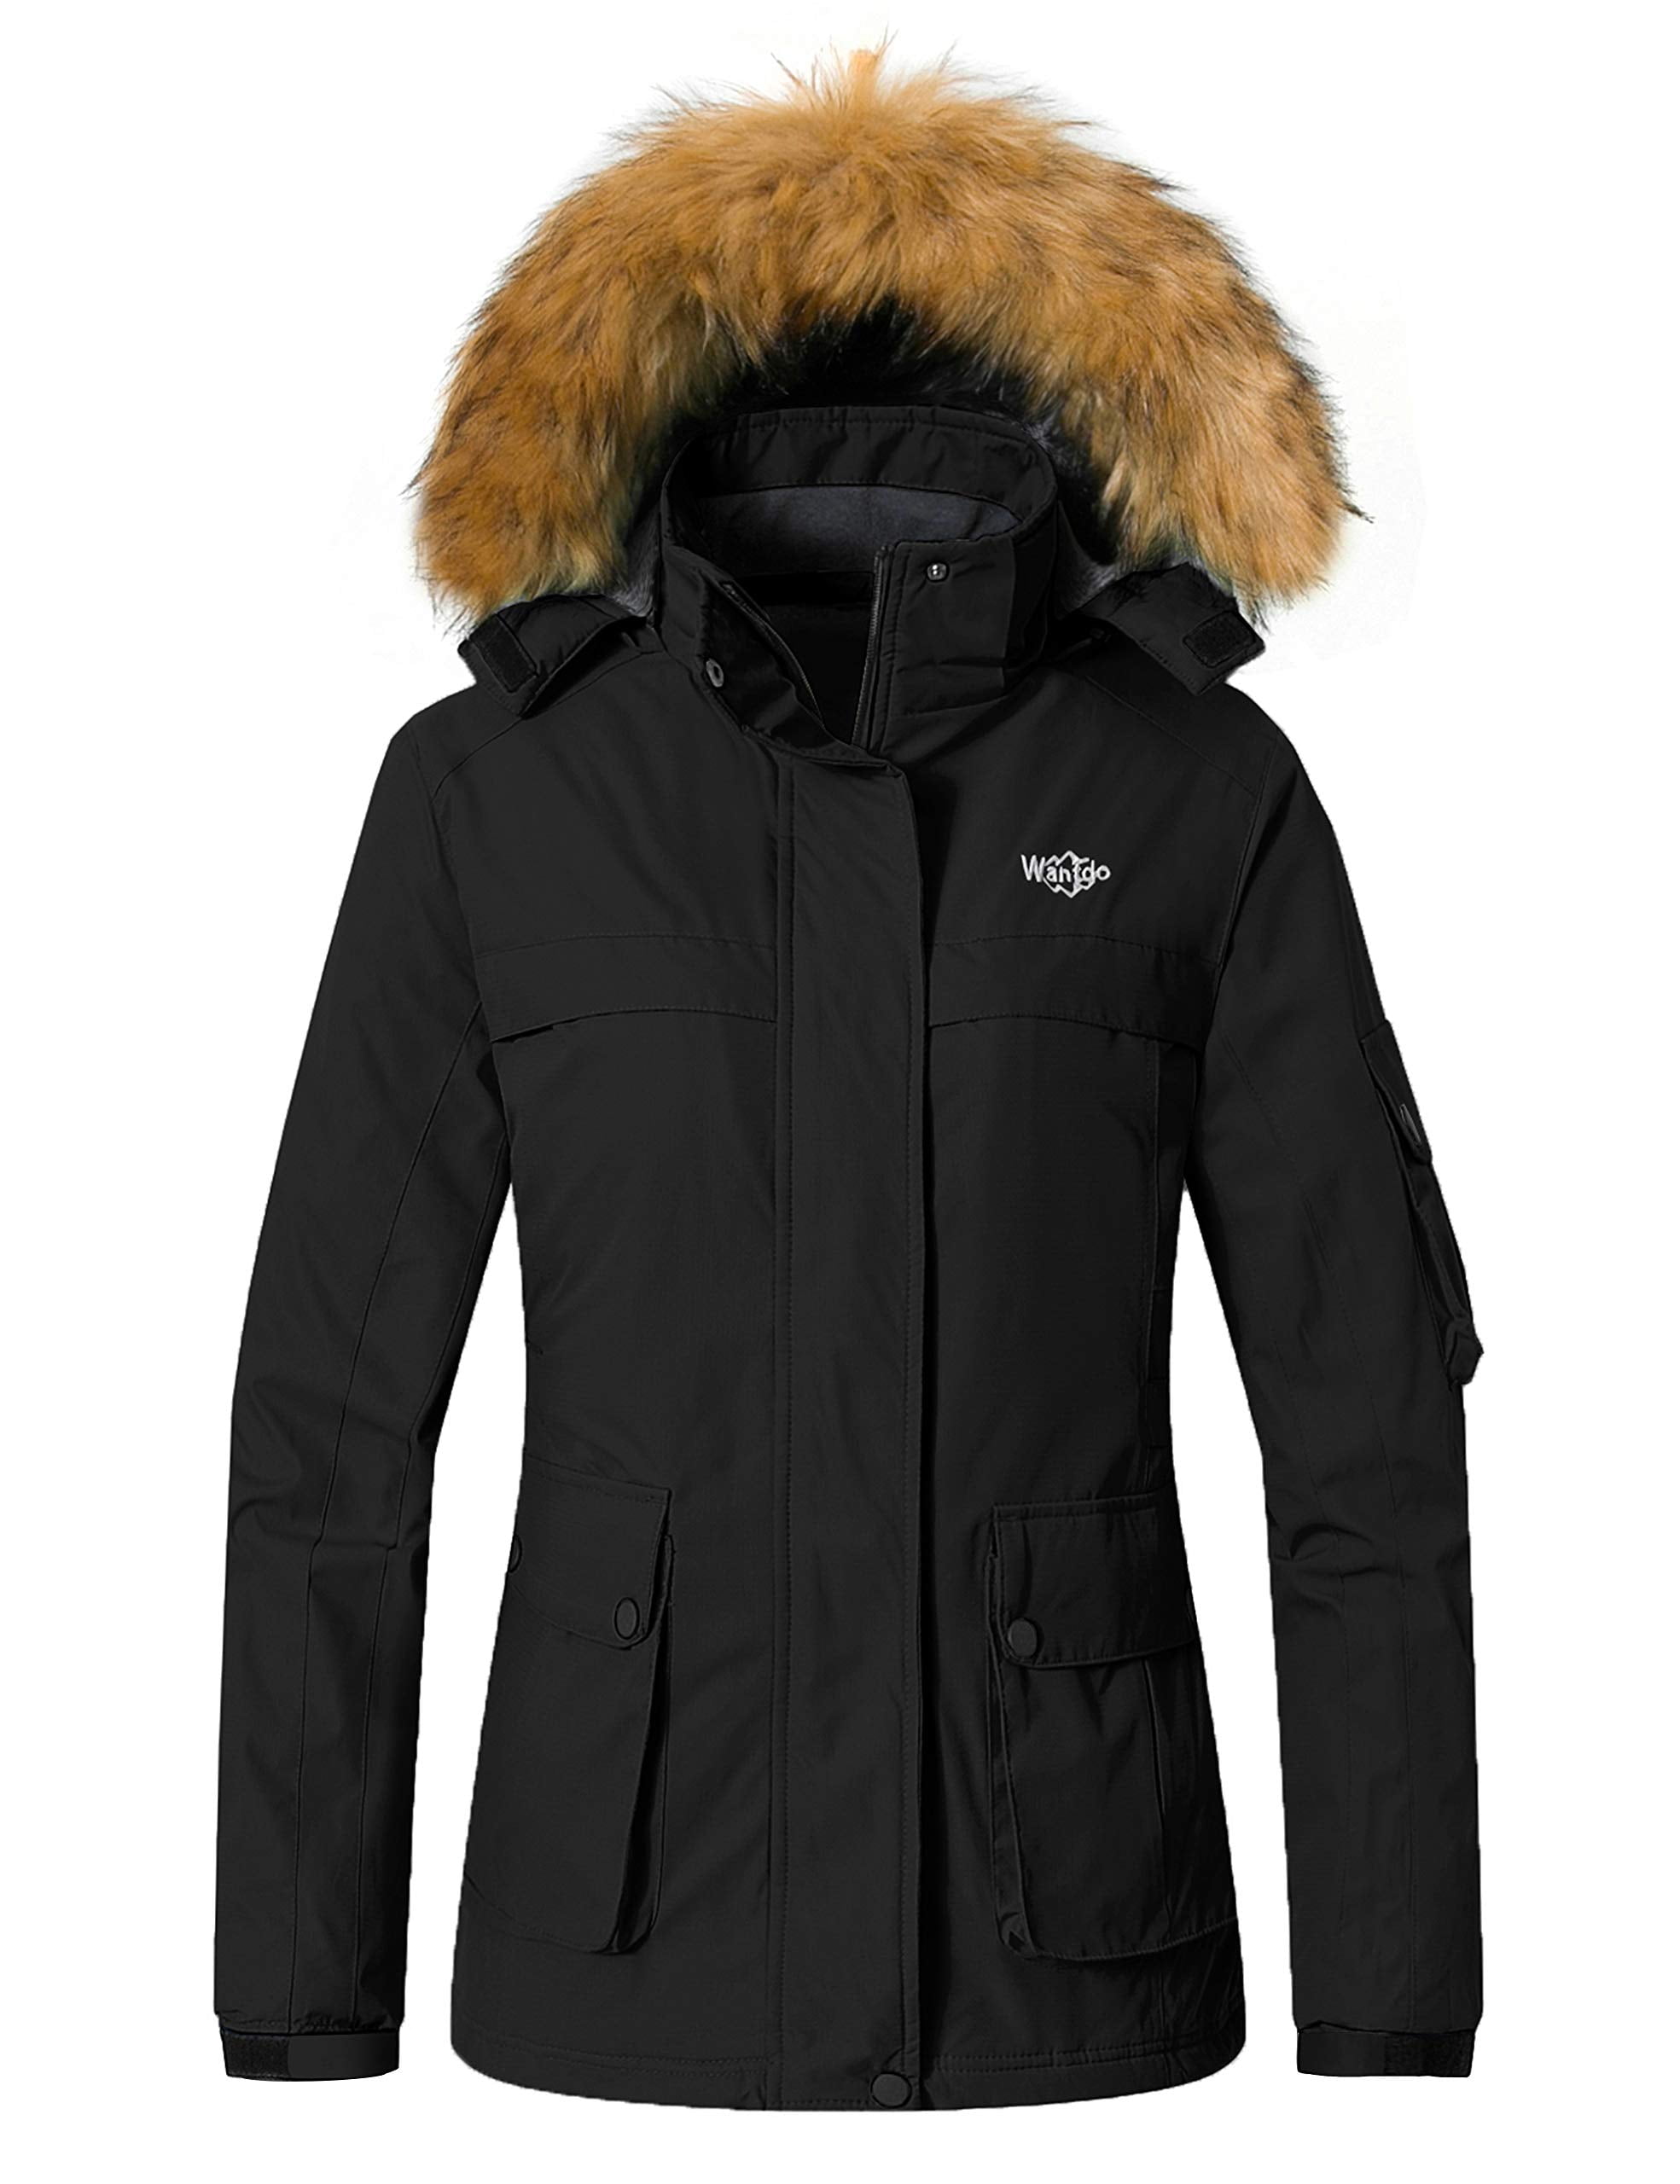 Wantdo Women's Waterproof Ski Jacket Hooded Winter Snow Coat Mountain Snowboarding Jackets Insulated Fleece Parka 